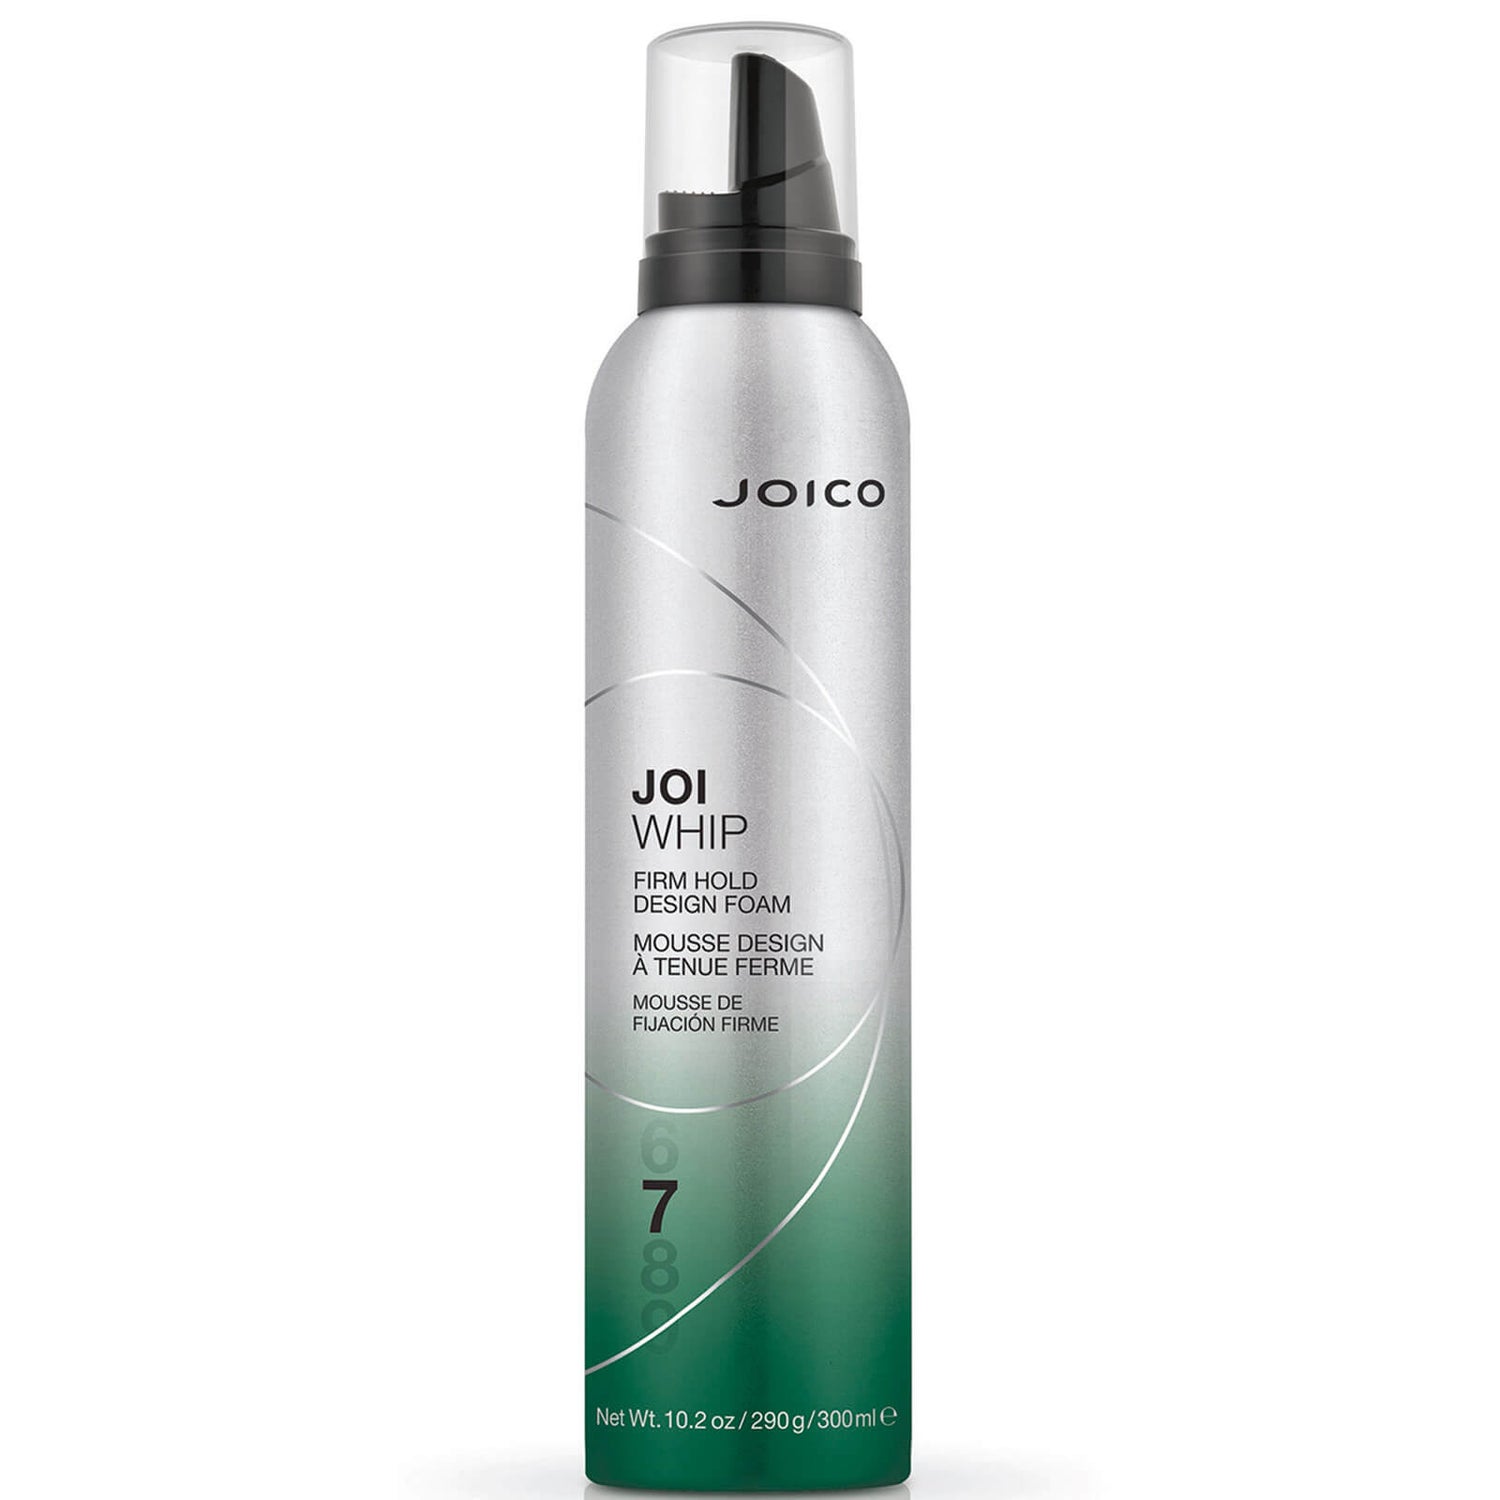 Espuma JoiWhip da Joico (6% VOC) 300 ml